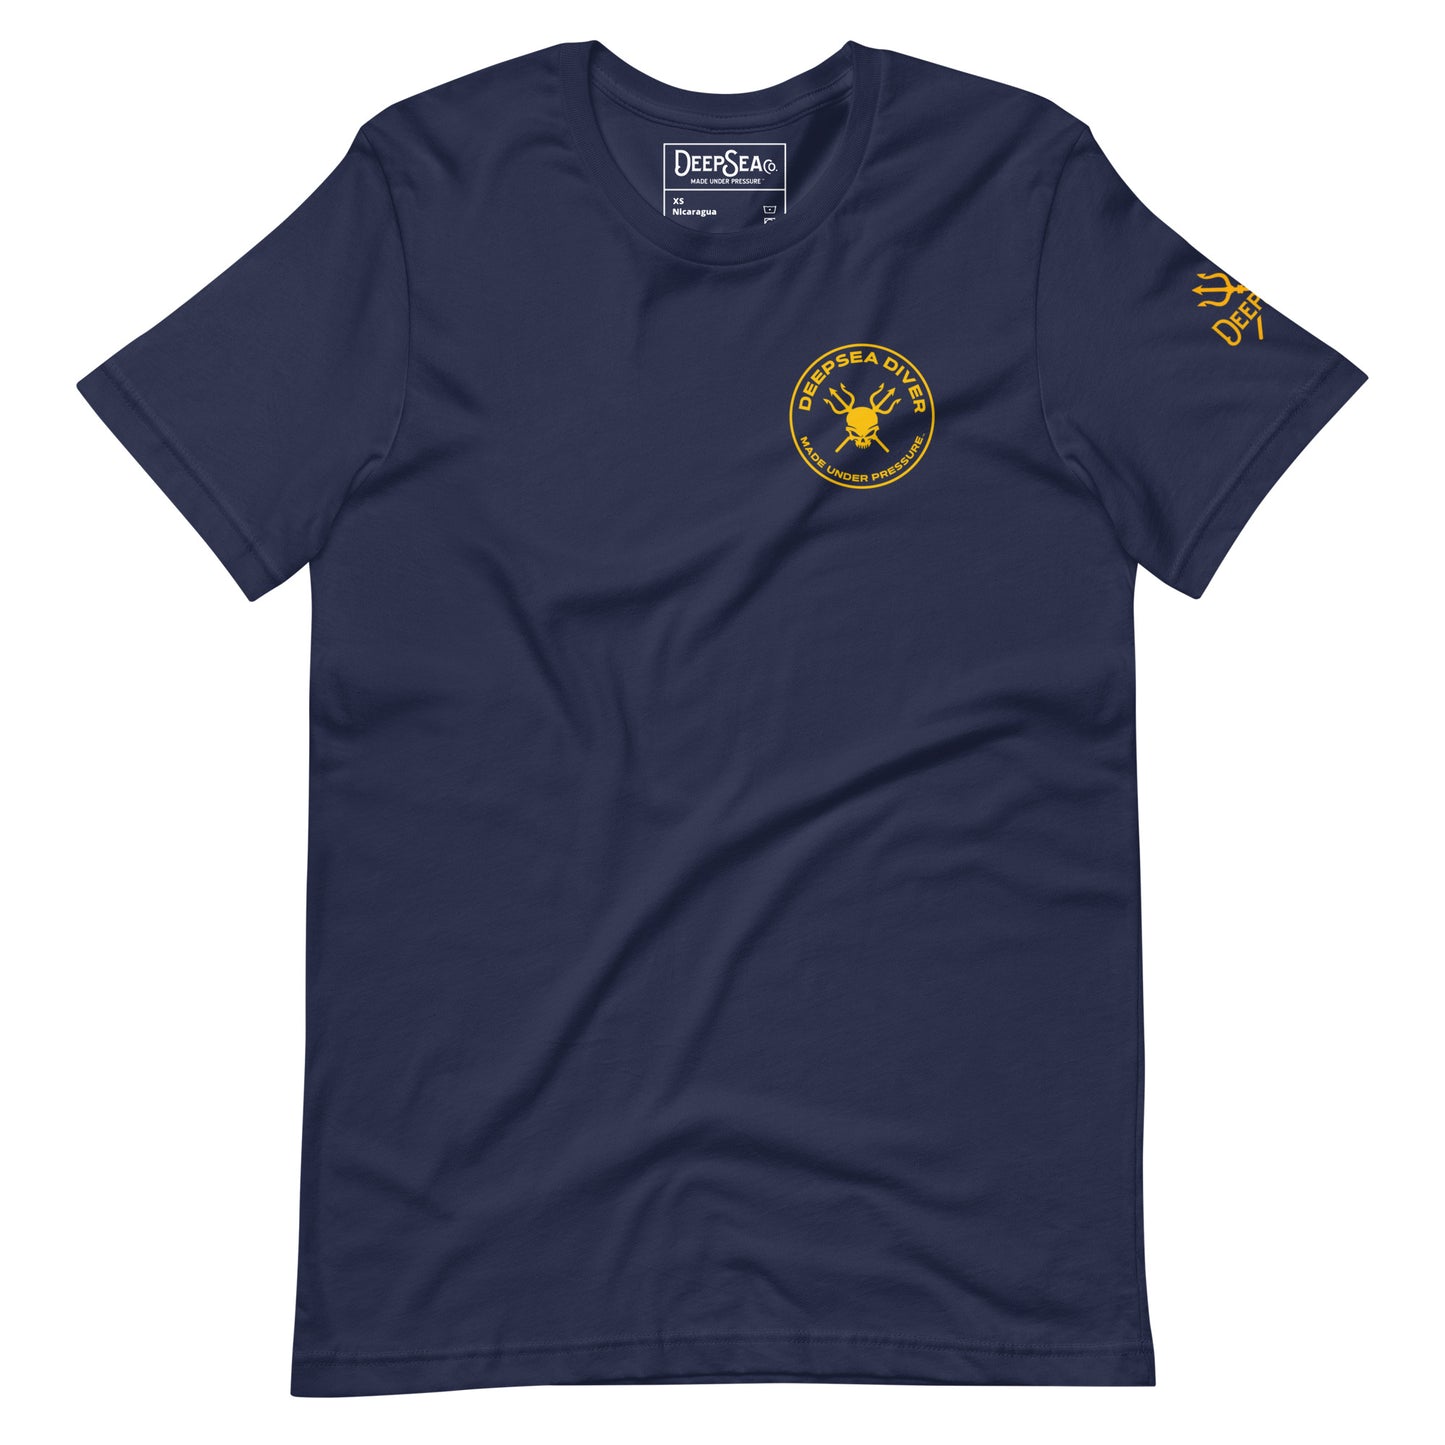 DeepSea Diver Collection Unisex t-shirt